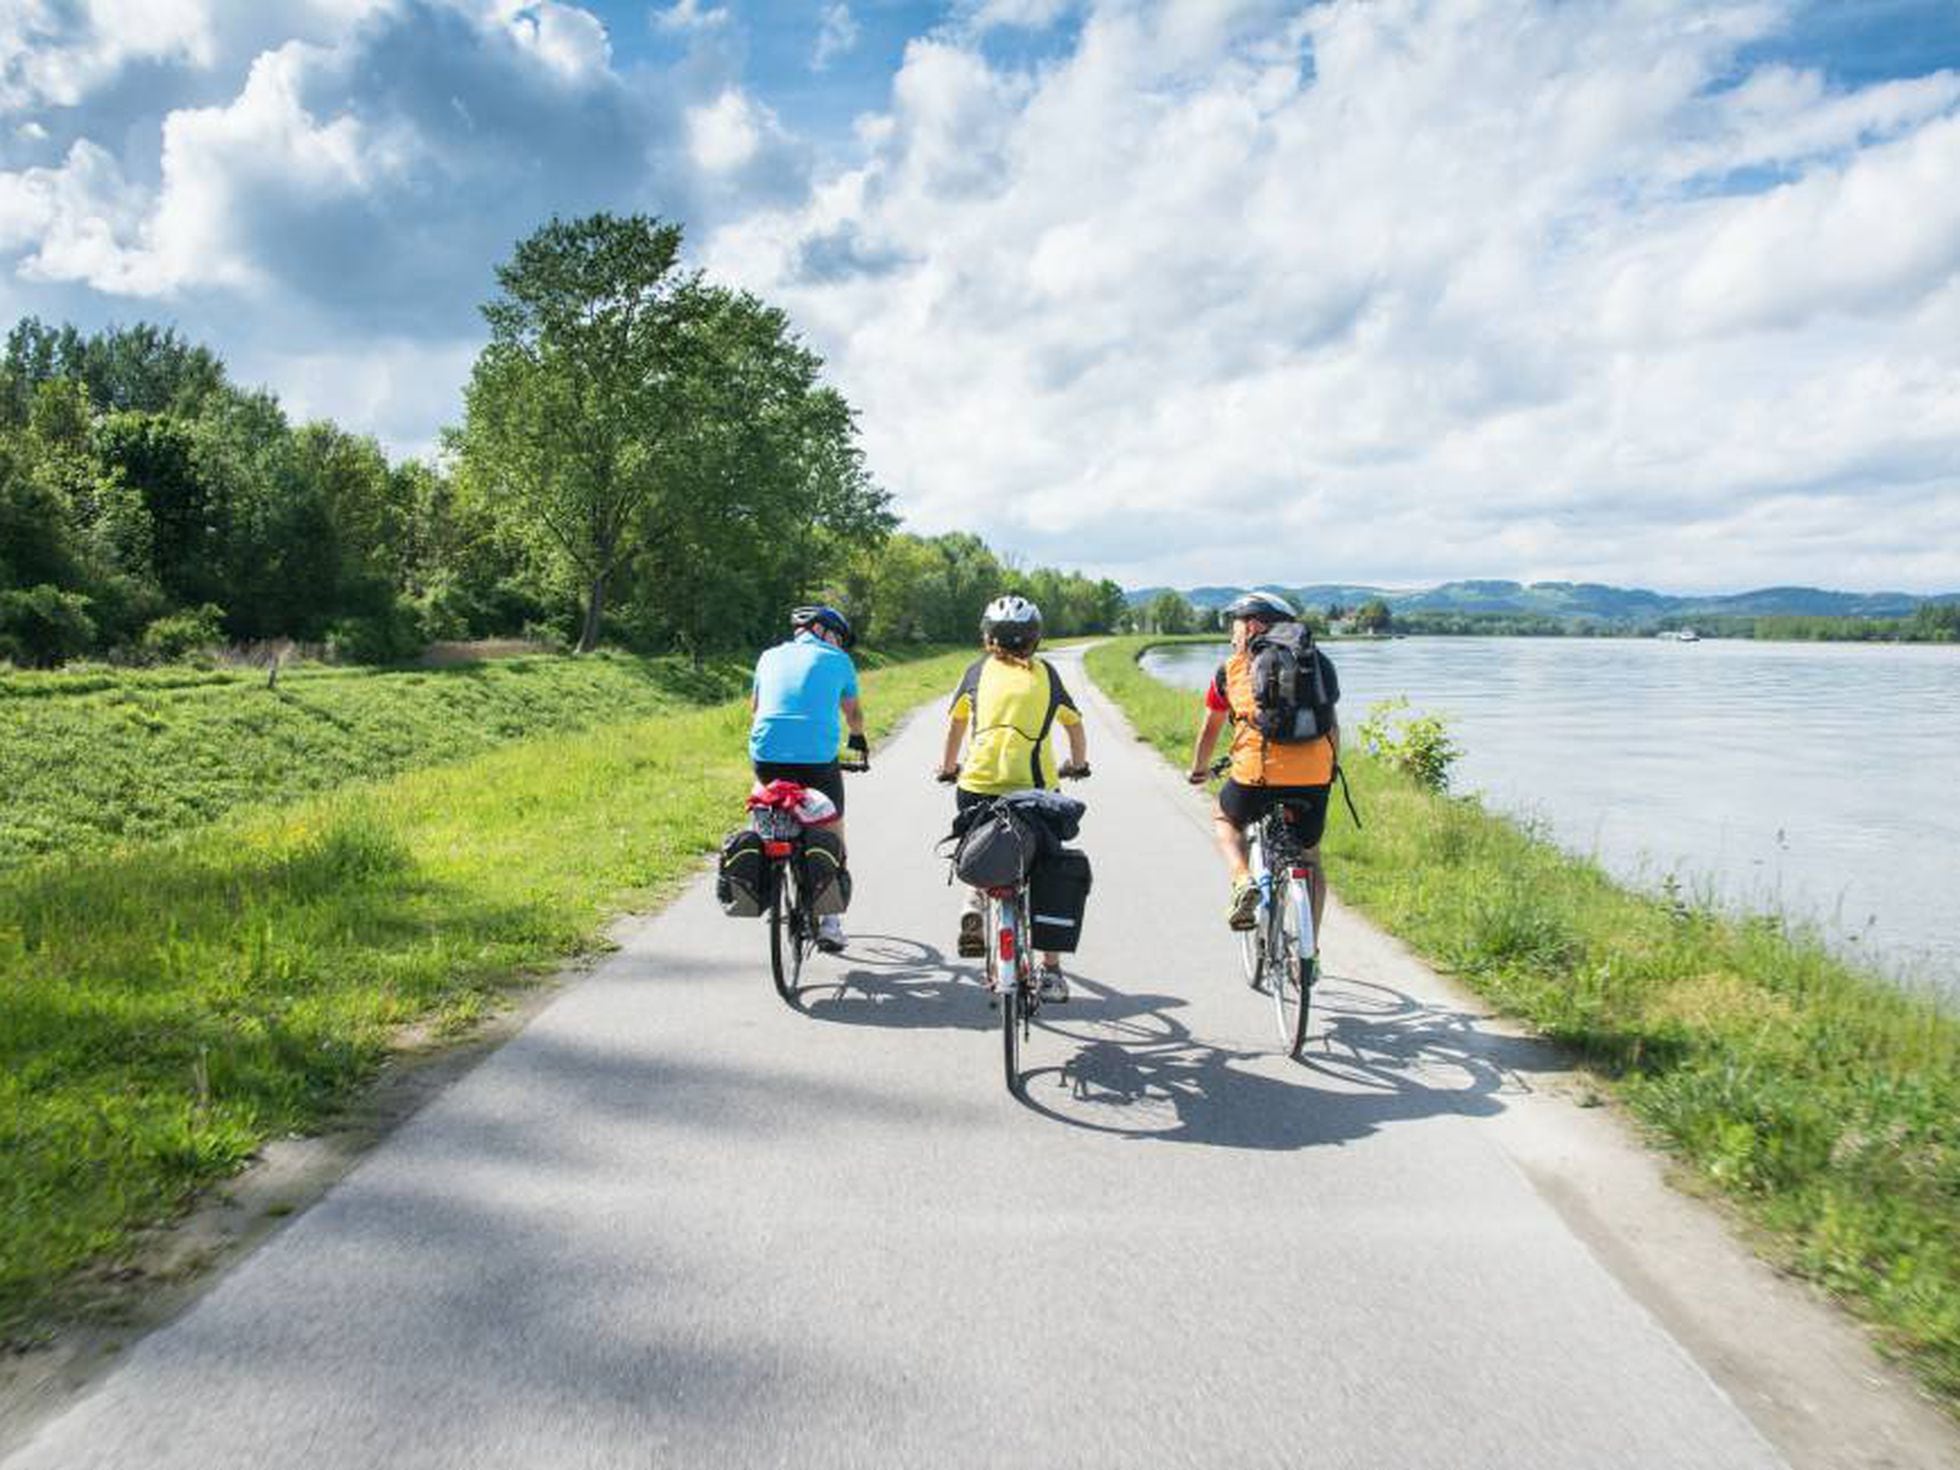 Consejo zoo imagen Recorrerías el Danubio en bici? | El blog de viajes de Paco Nadal | EL PAÍS